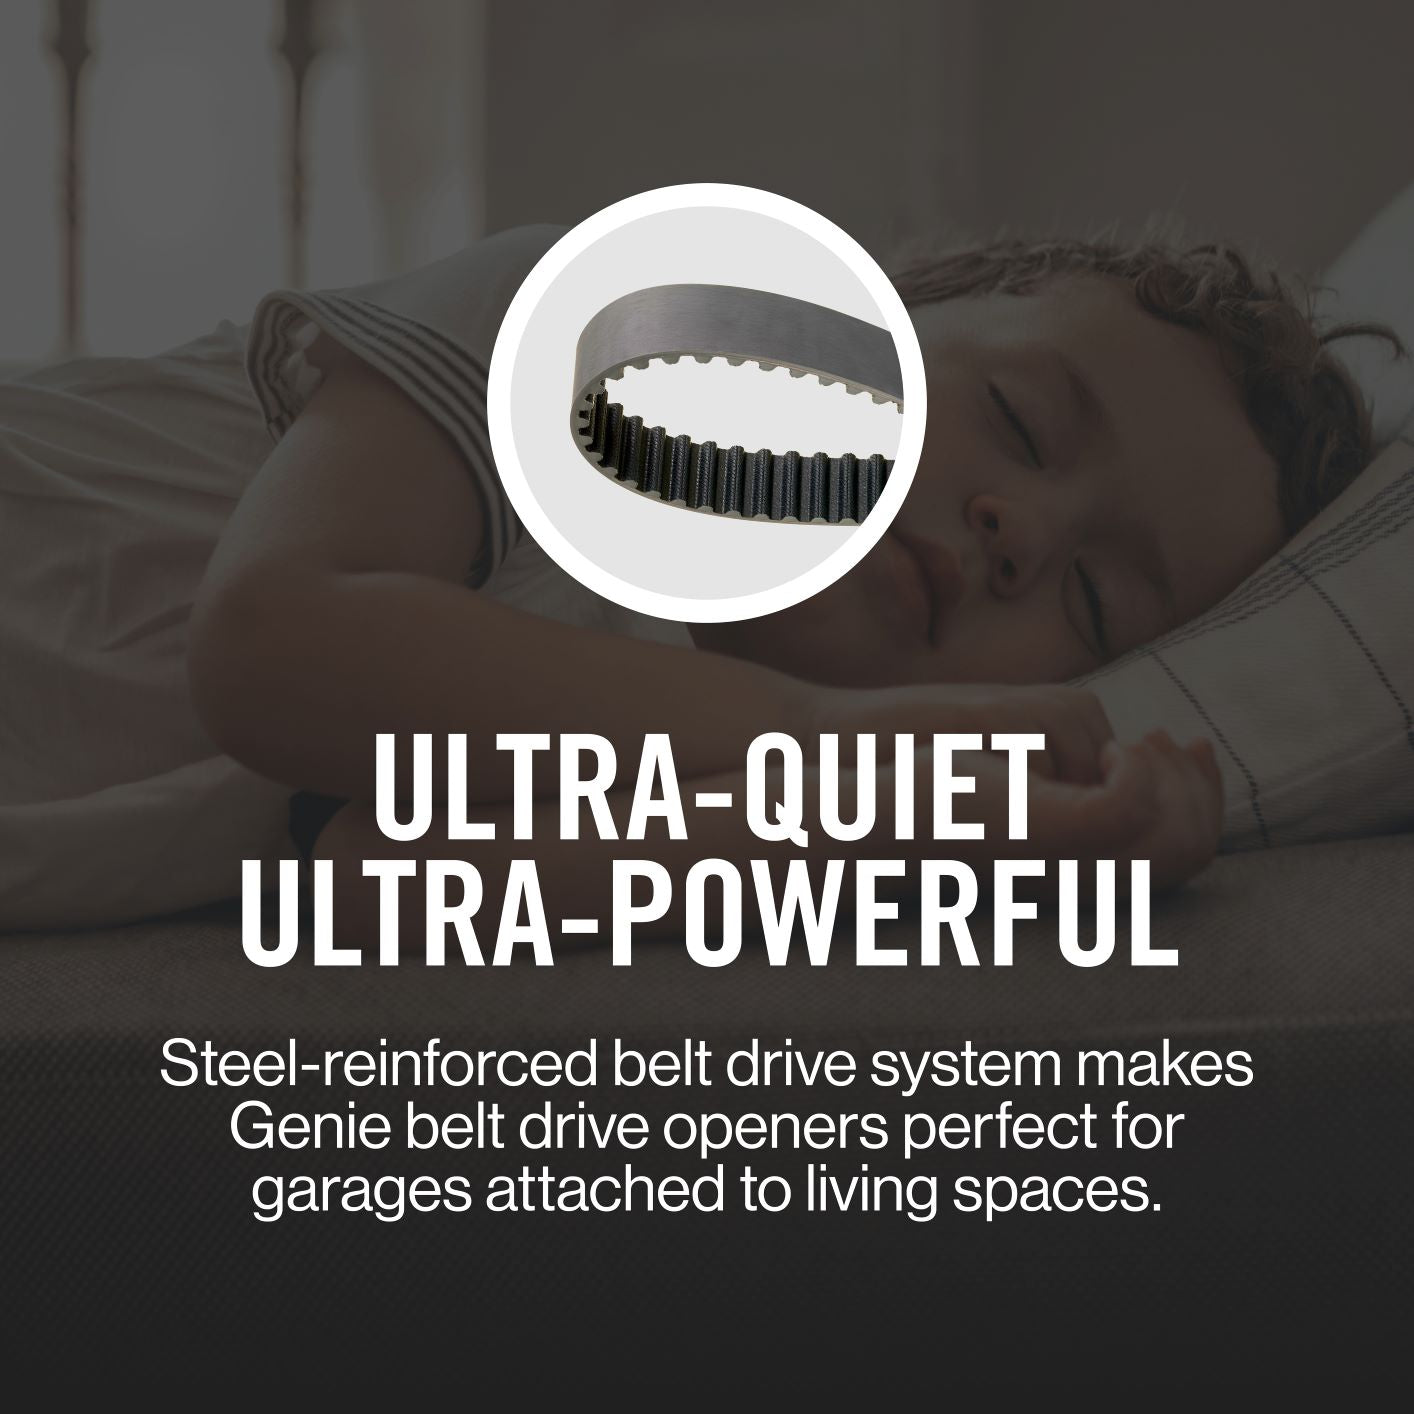 Ultra Quiet powerful steel reinforced belt drive garage door opener systems